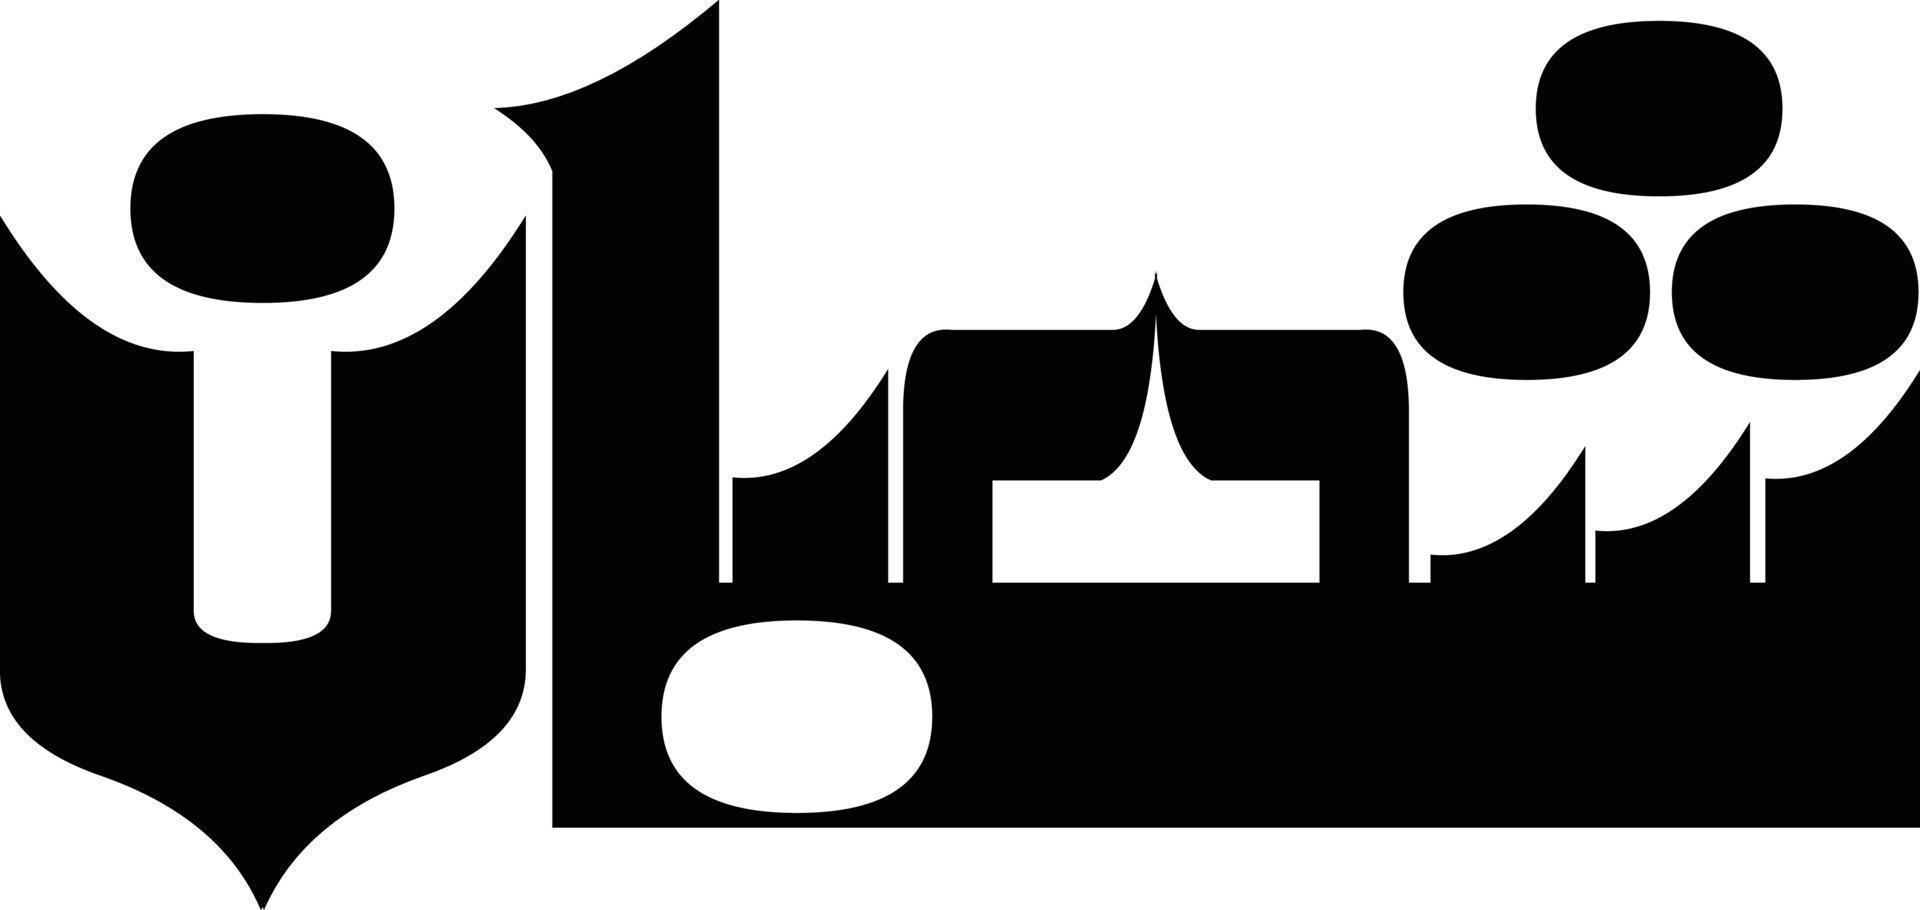 Shaban título caligrafía islámica vector libre